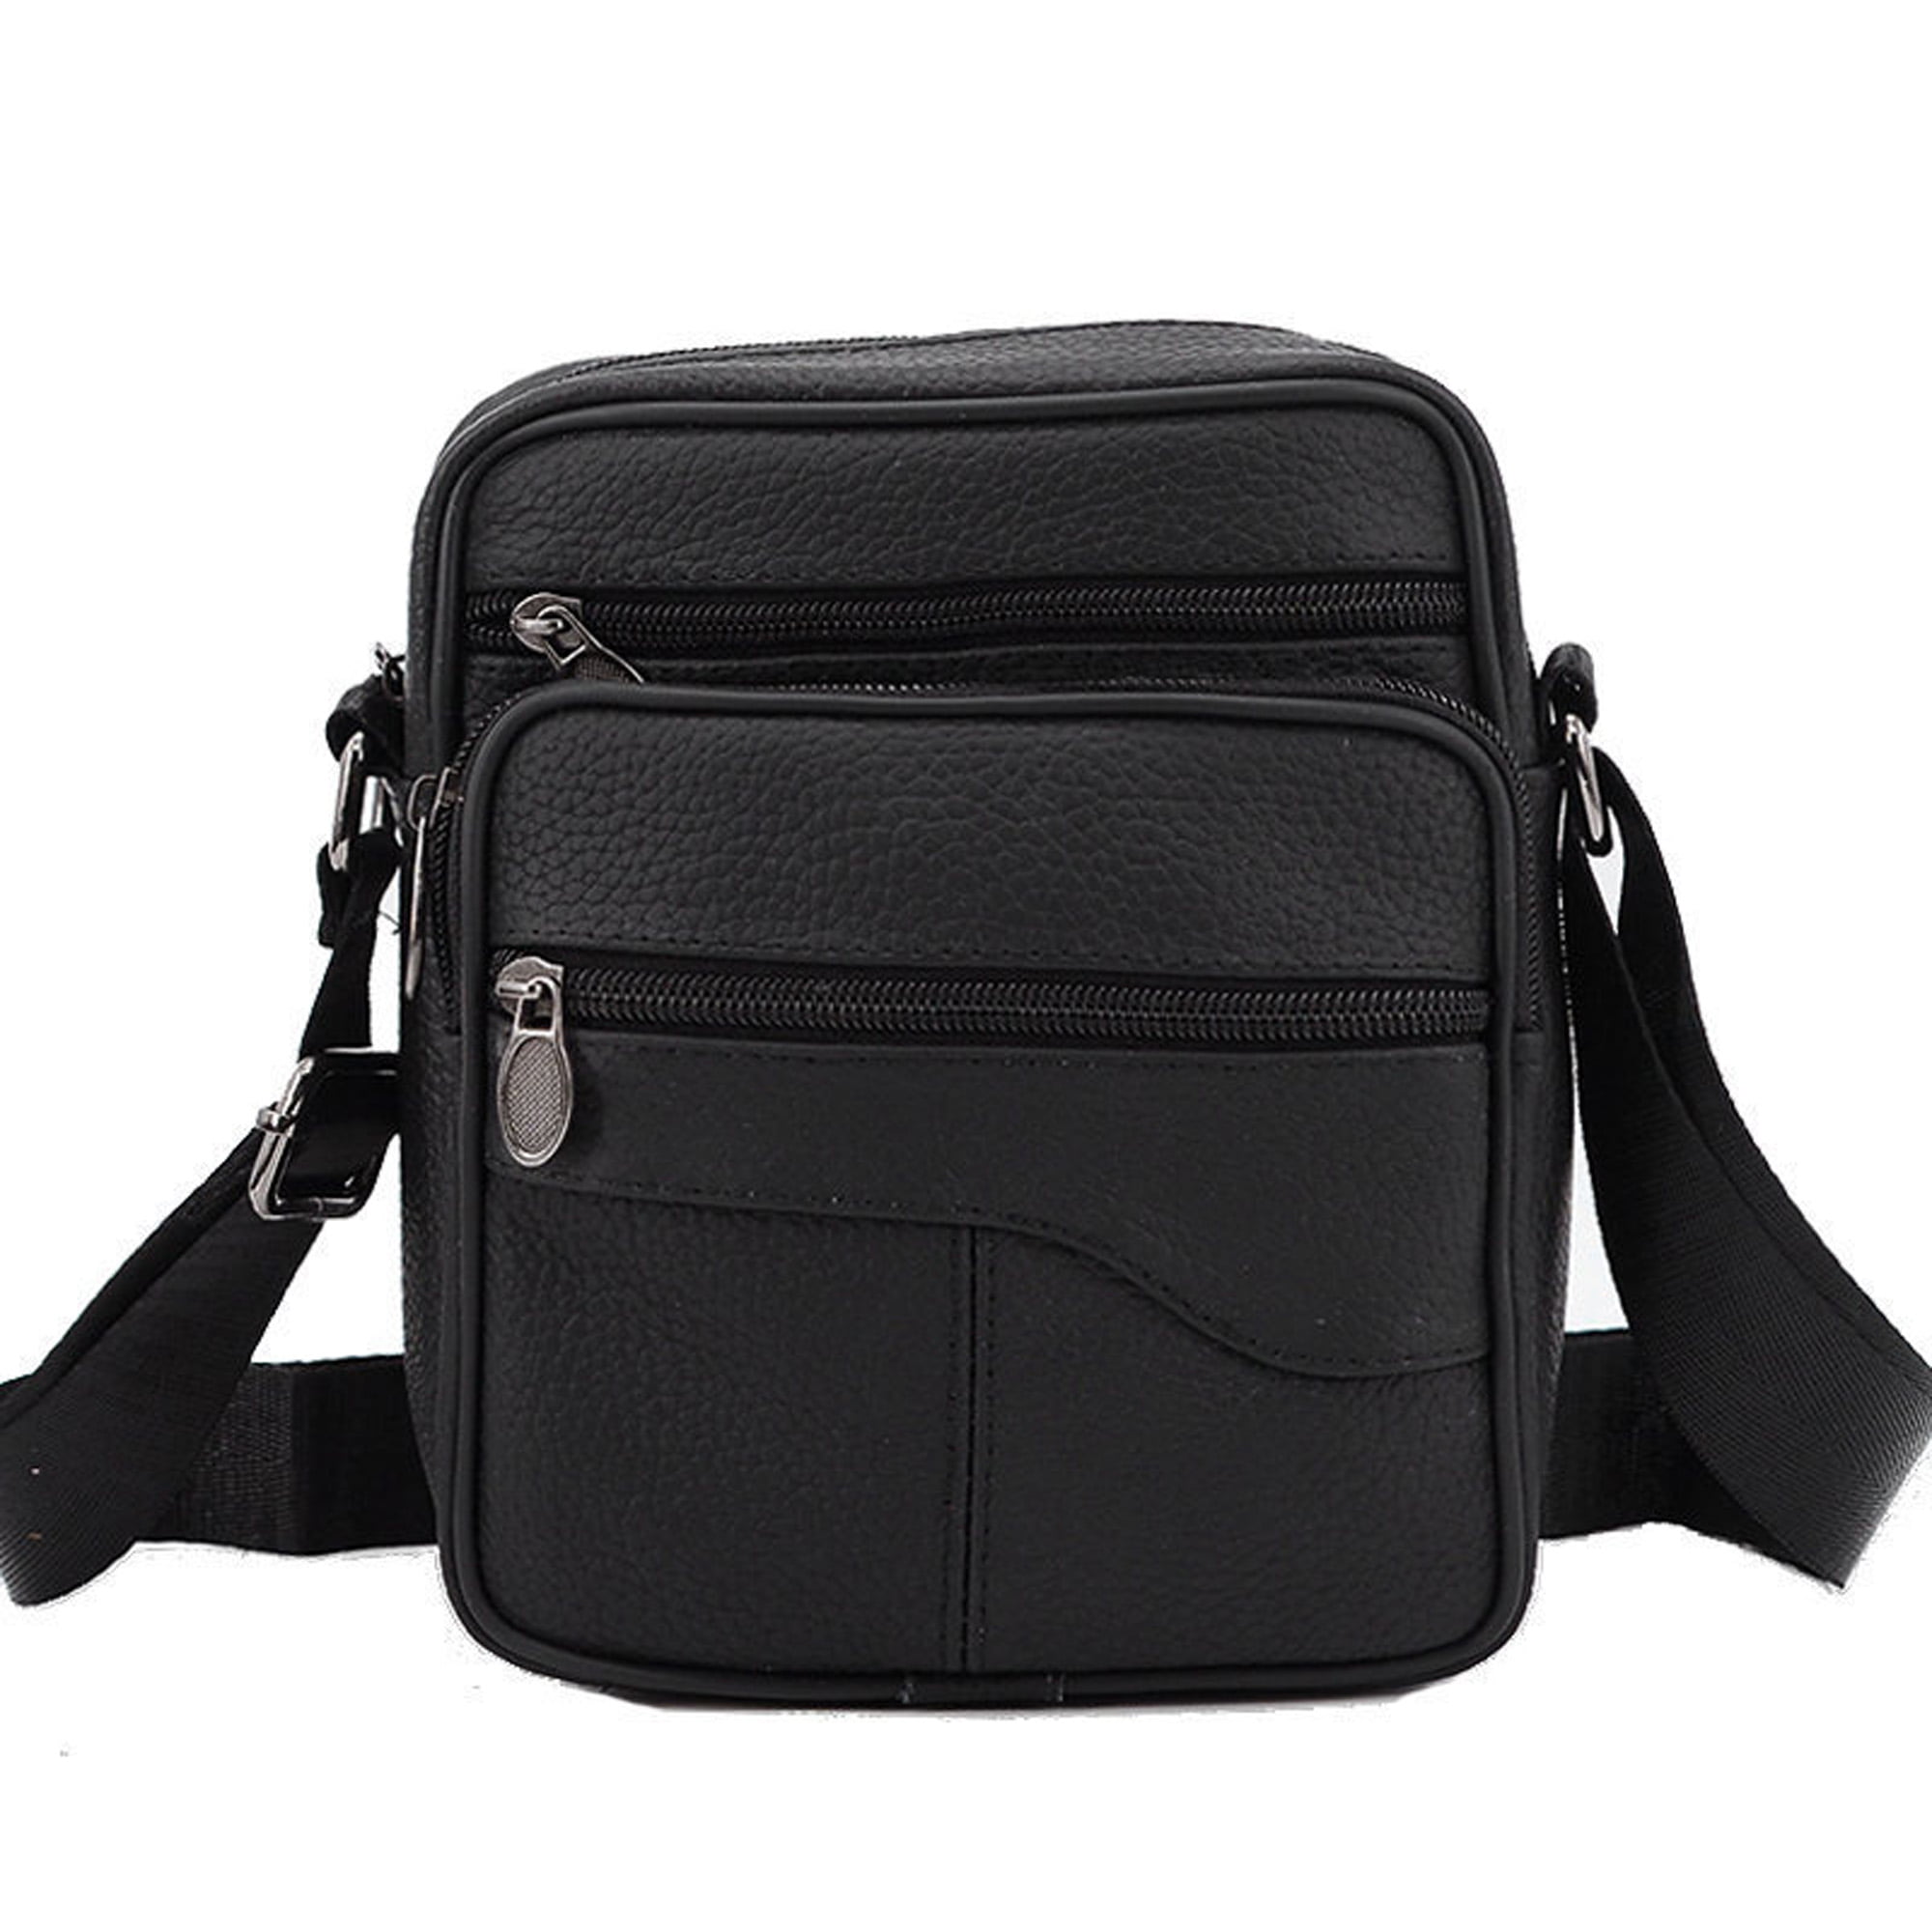 COSCOOA Shoulder Bag for Men Leather Man Bag Man Purse Crossbody Bags for  Men Handbag Bag Messenger Satchel Travel bag